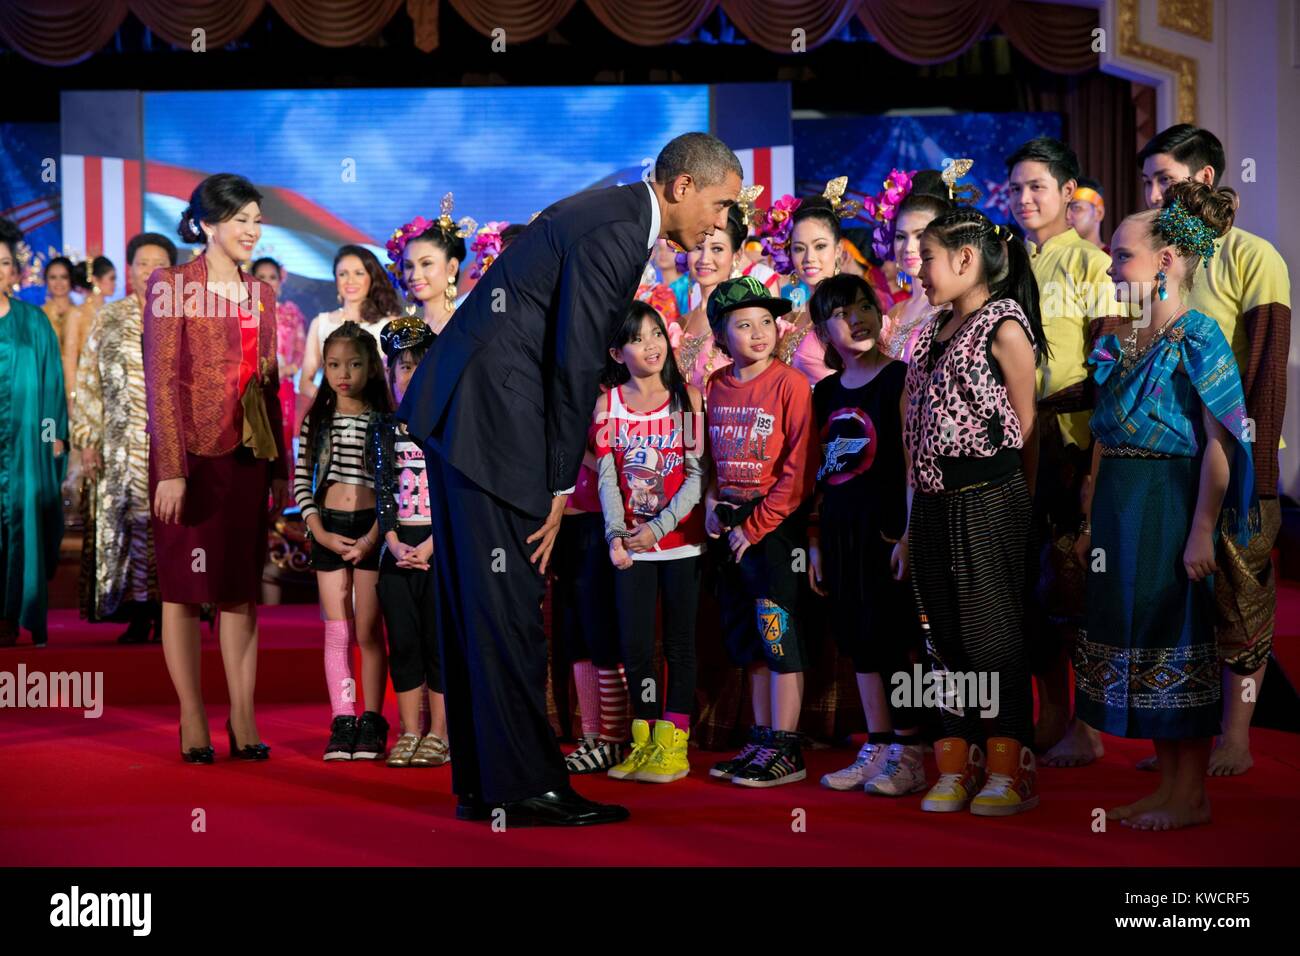 Präsident Barack Obama und thailändischen Premierminister Yingluck Shinawatra grüßt junge Interpreten. Das Government House in Bangkok, Thailand, Nov. 18, 2012. (BSLOC 2015 3 208) Stockfoto